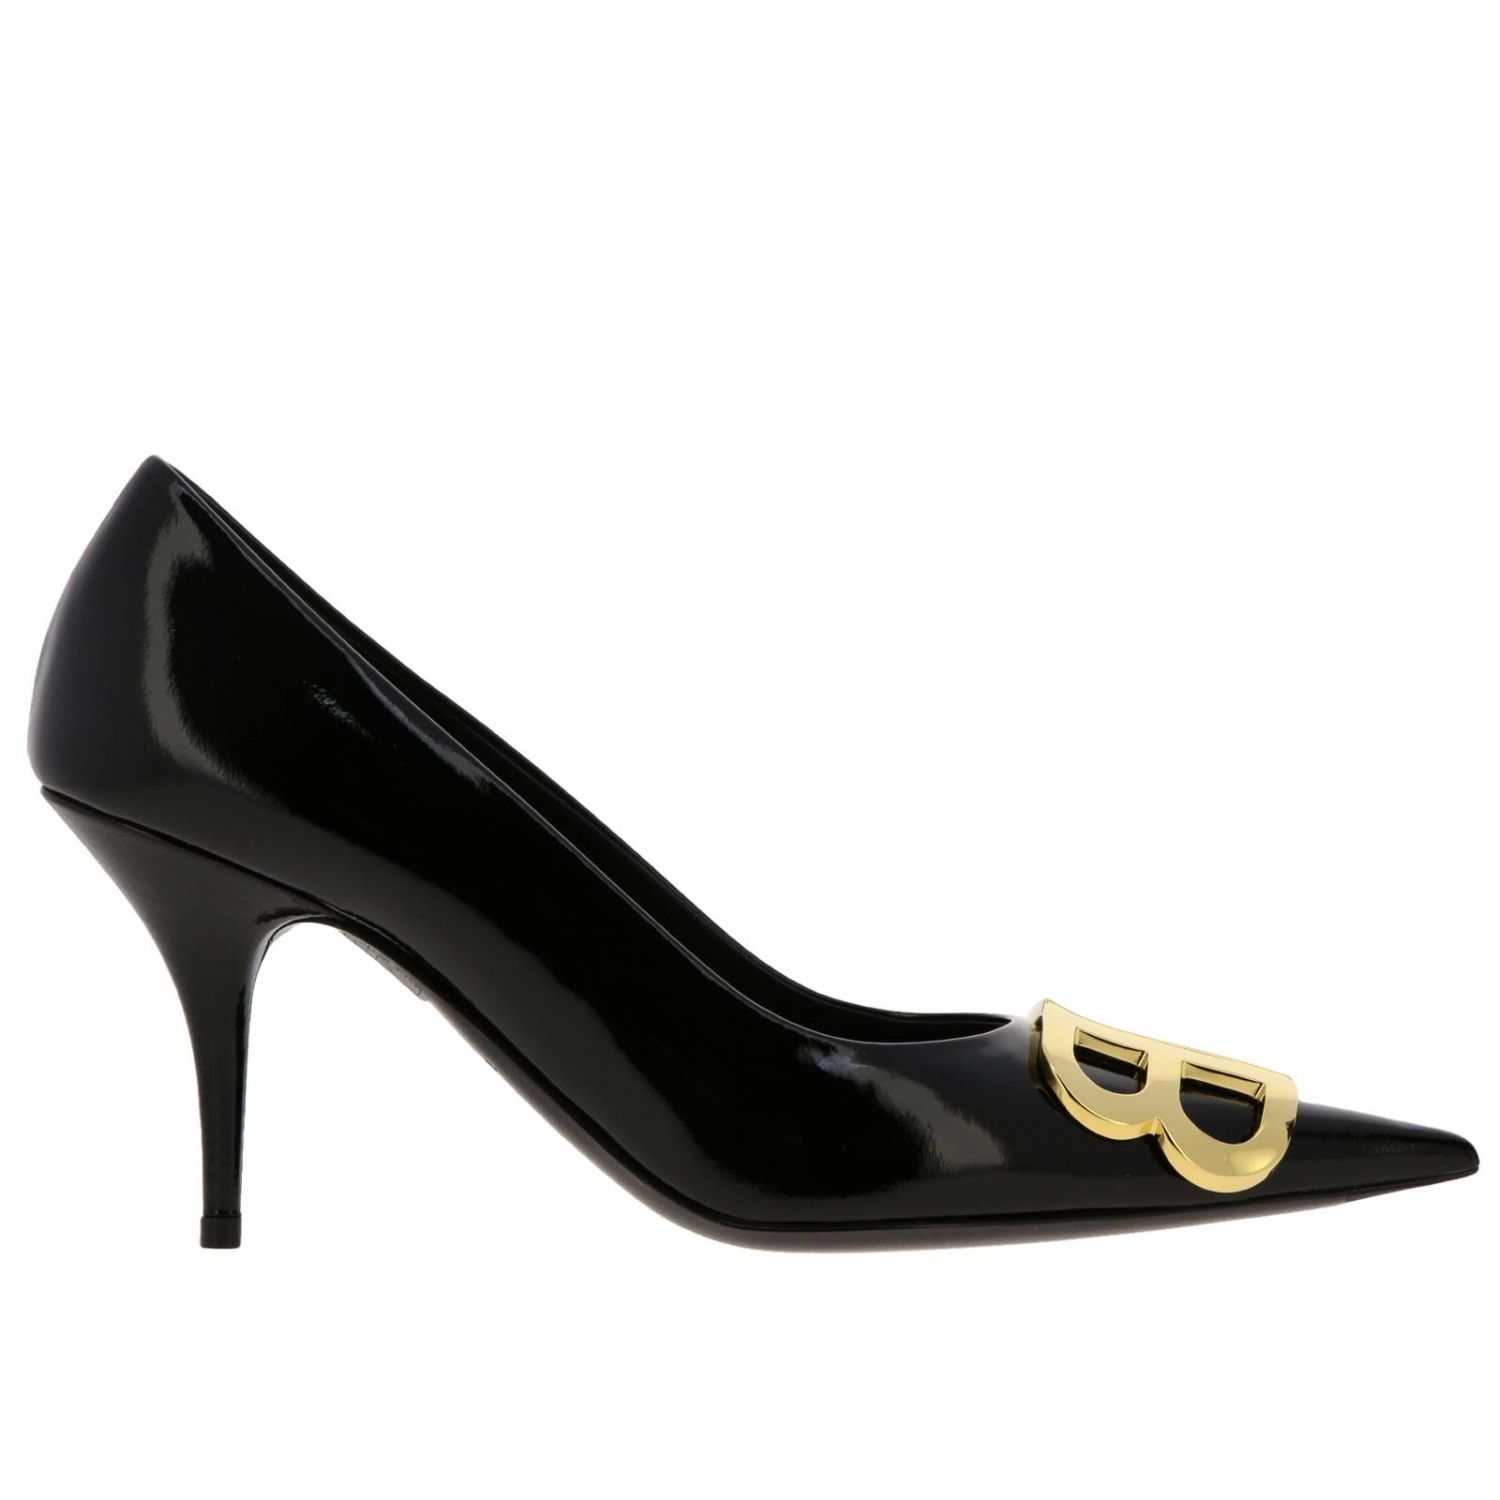 Balenciaga Outlet: Shoes women - Black | Pumps Balenciaga 548817 WAVF0 ...